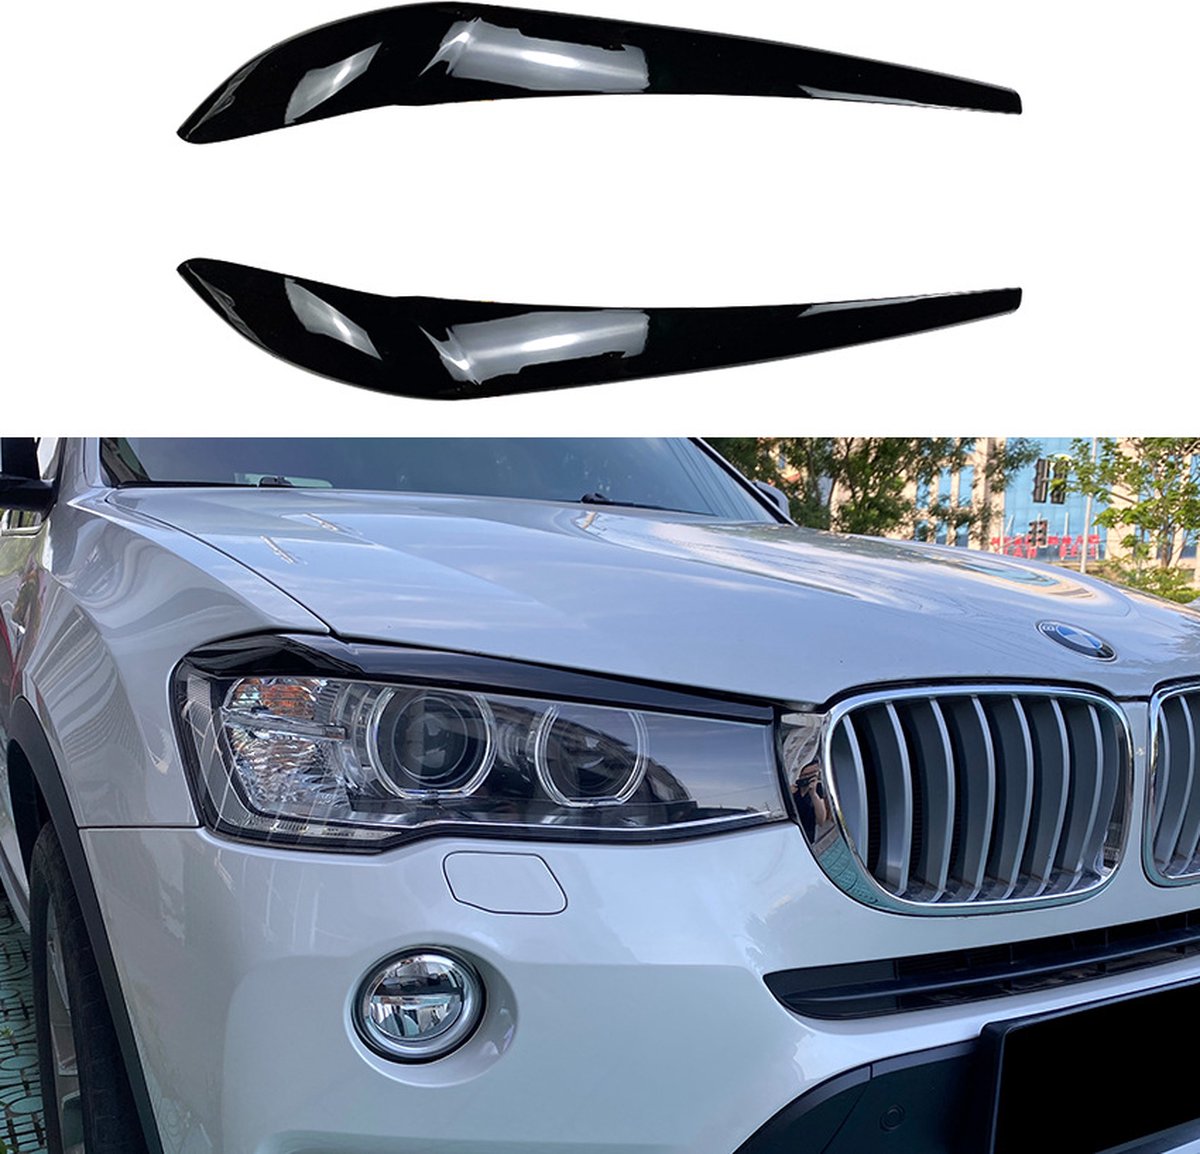 Booskijkers zwart glans voor BMW X3 F25 (Facelift) & X4 F26 2014-2017 (pre-Facelift + Facelift)